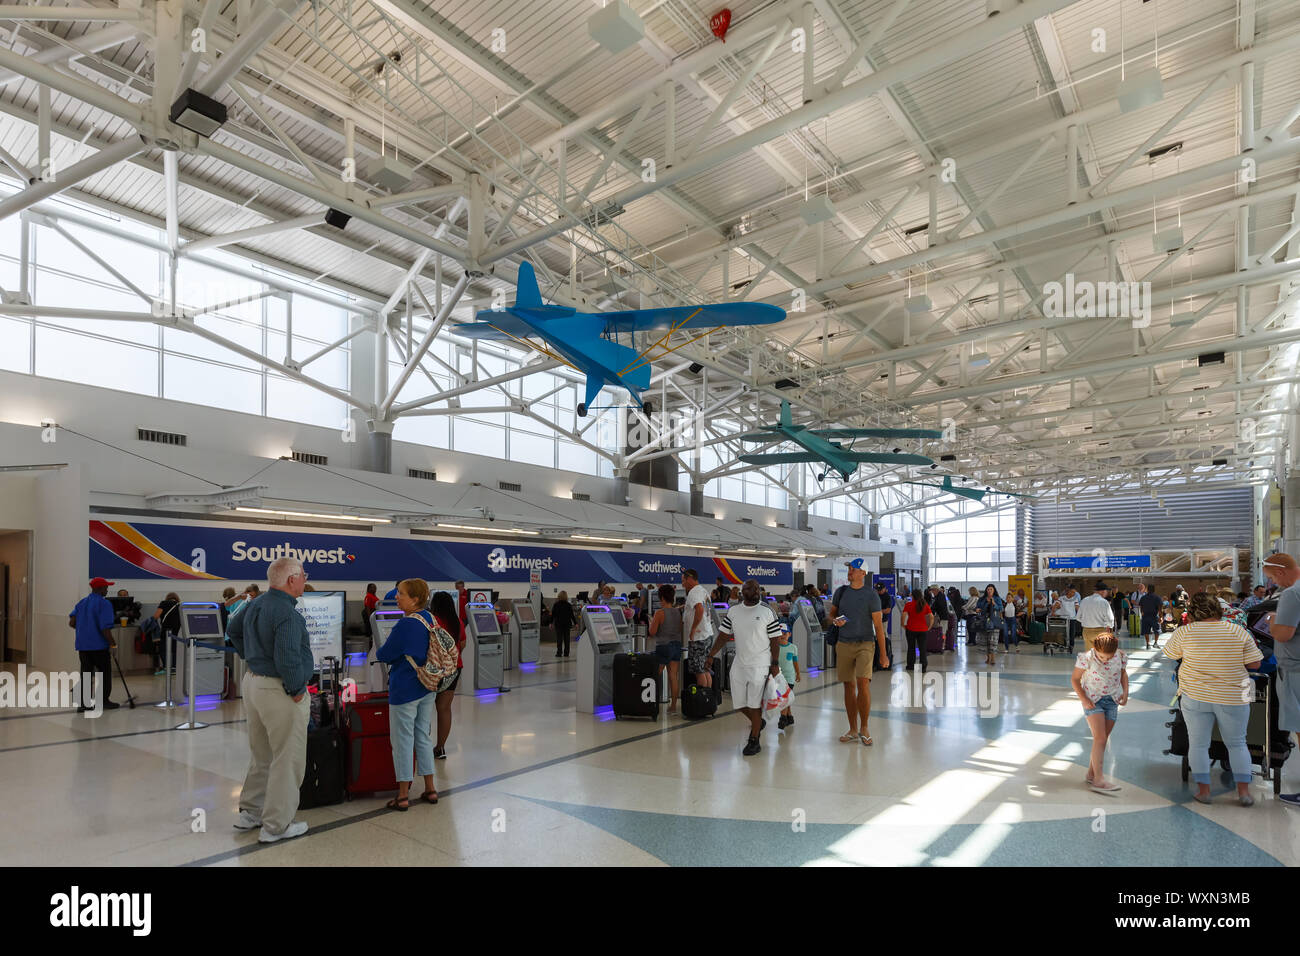 Fort Lauderdale, Florida - April 6, 2019: Terminal 1 des Flughafen Fort Lauderdale (FLL) in Florida. Stockfoto